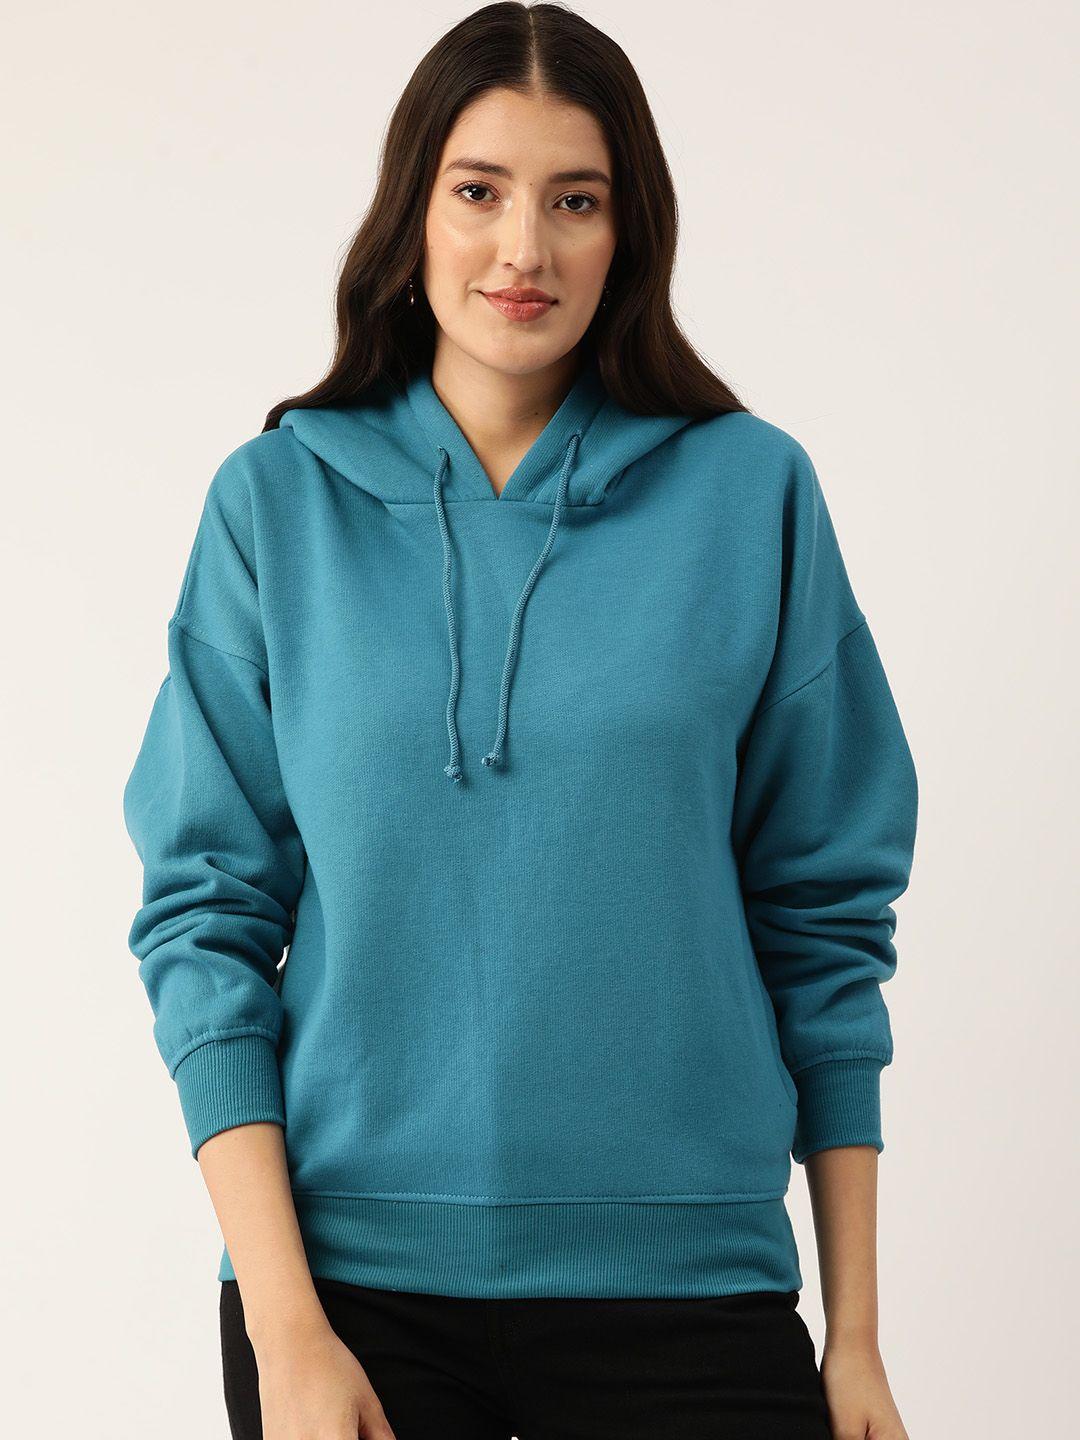 rue collection hooded fleece sweatshirt